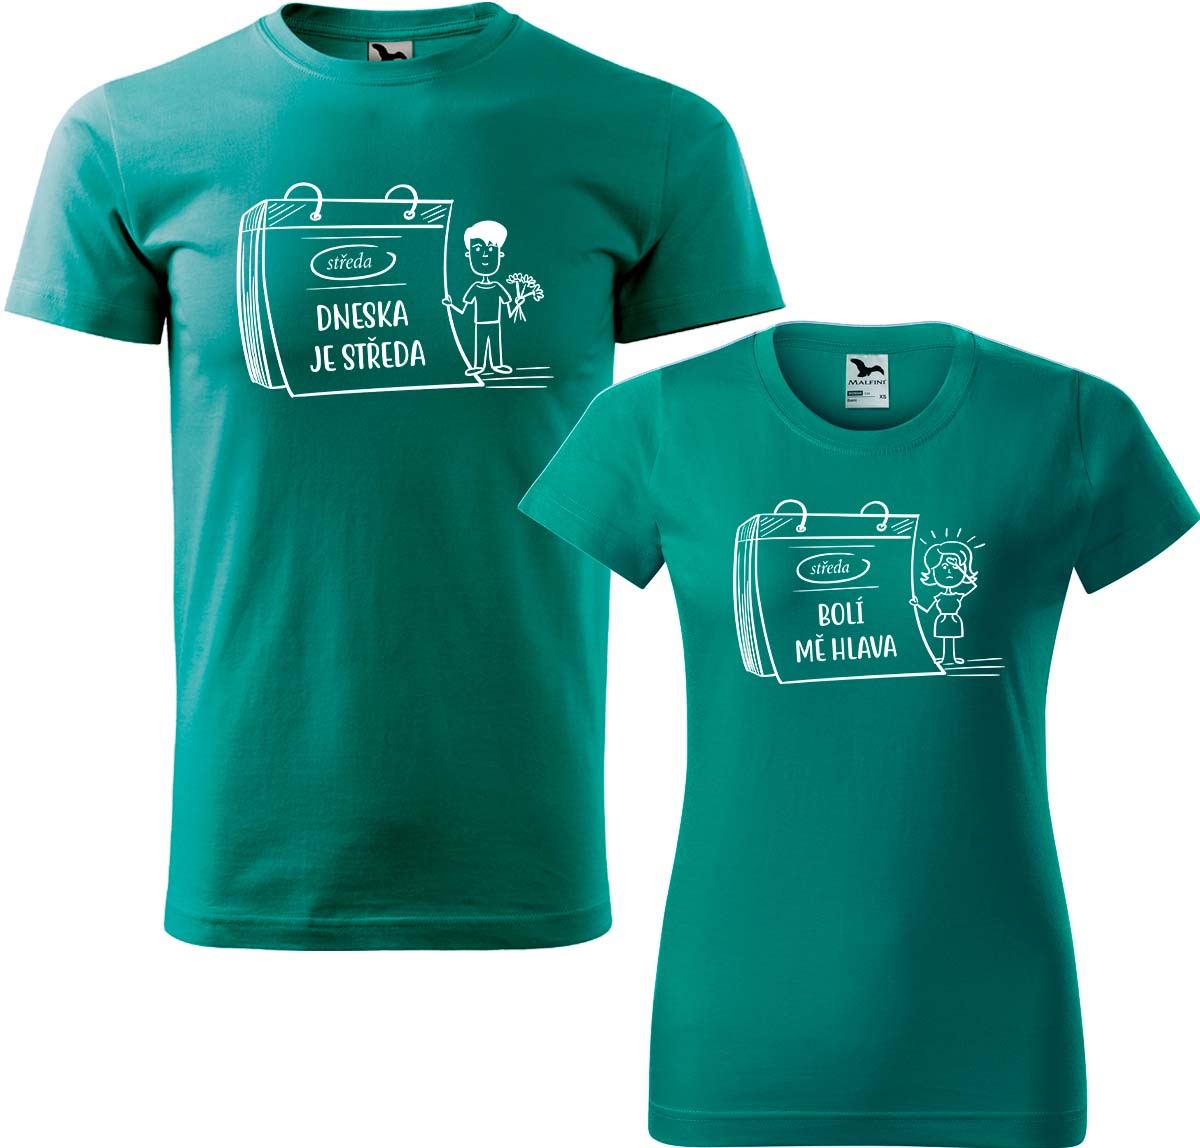 Trička pro páry - Dneska je středa Barva: Emerald (19), Velikost dámské tričko: S, Velikost pánské tričko: S